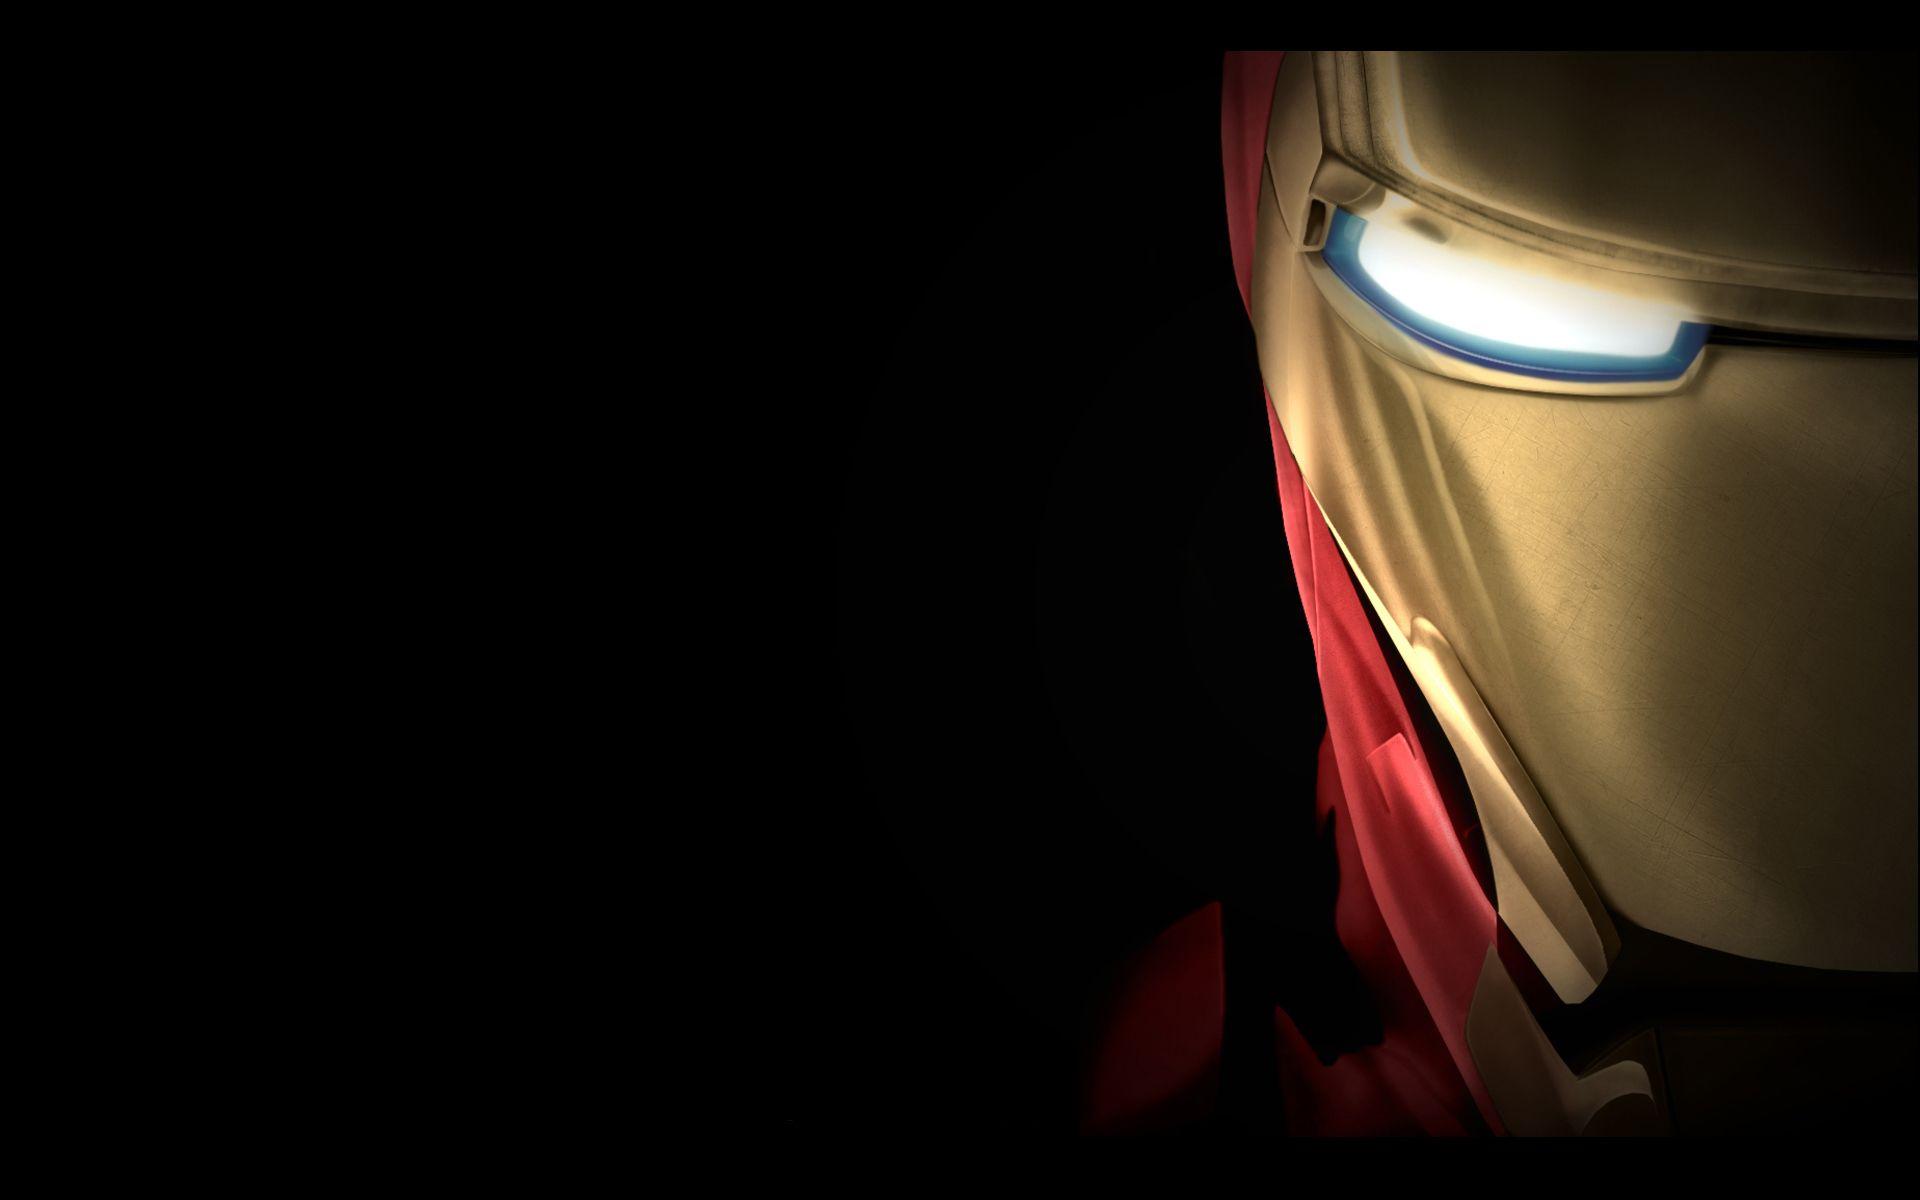 Hình nền laptop Iron Man 4k là một lựa chọn ấn tượng cho các fan của siêu anh hùng này. Bạn sẽ được truyền cảm hứng và đầy sức mạnh khi nhìn thấy hình ảnh của Iron Man trên màn hình laptop của mình. Với độ phân giải cao, bạn sẽ không bao giờ muốn rời mắt khỏi màn hình của mình.